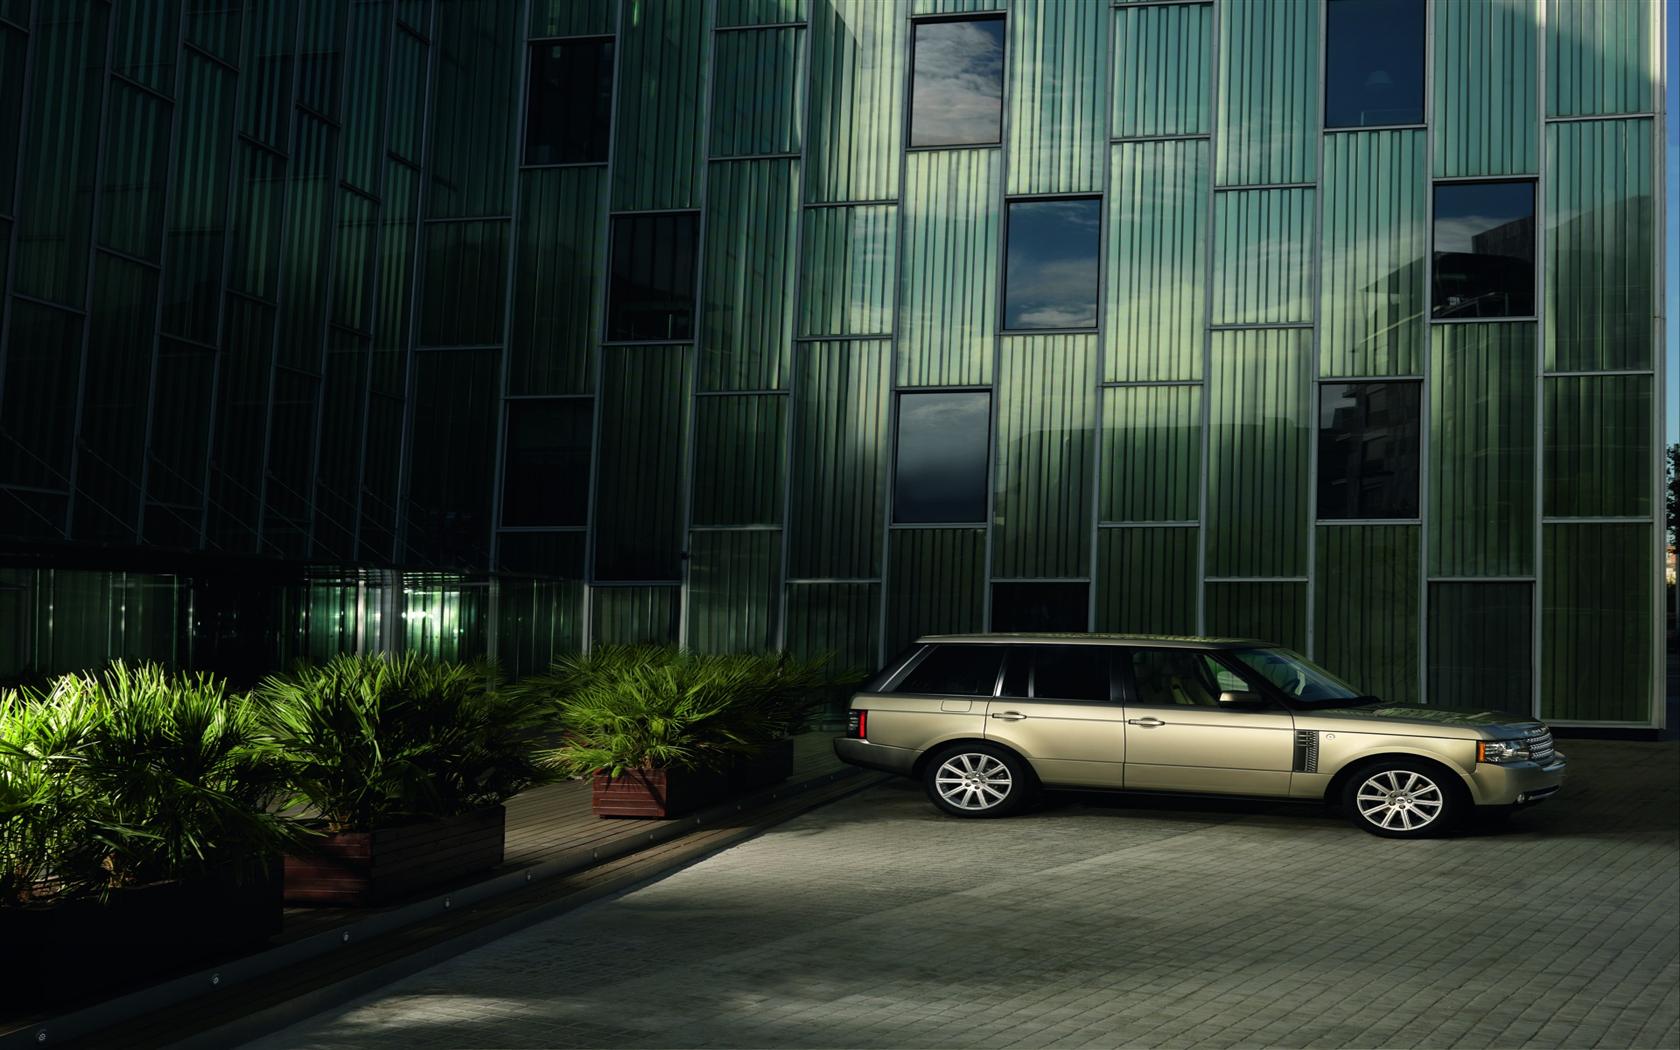 2010 Land Rover Range Rover